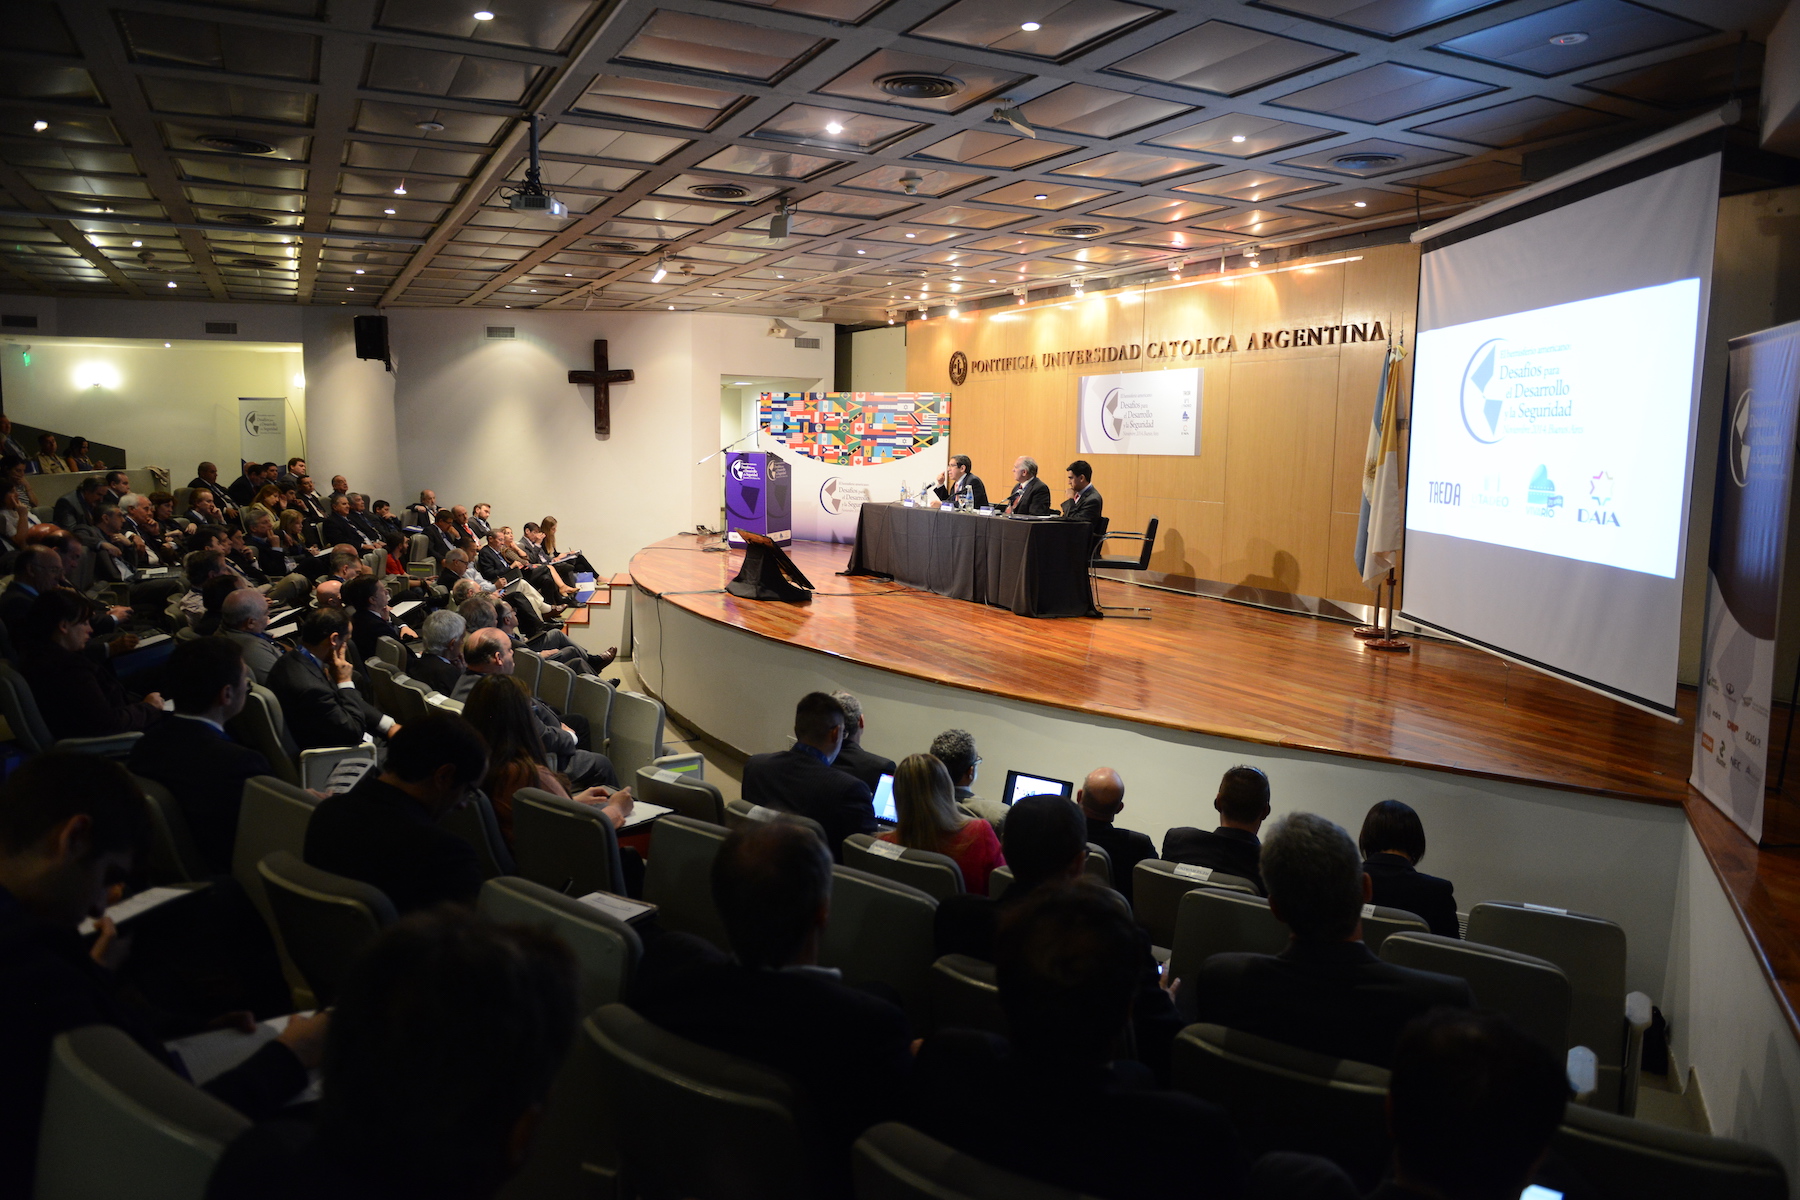 Organizamos grandes seminarios y eventos académicos de alcance internacional.